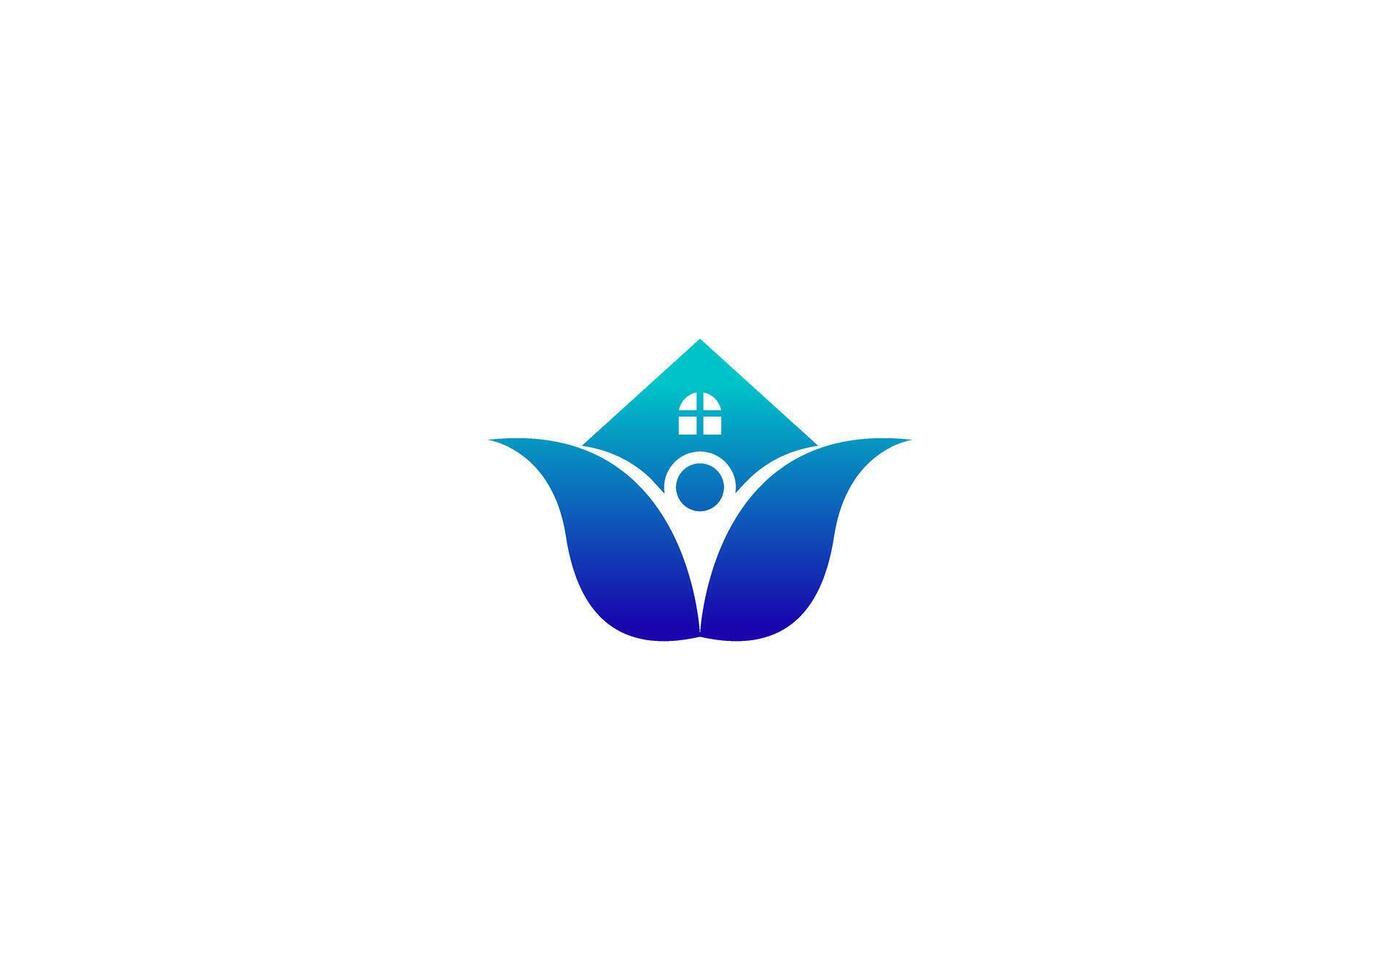 logo huis en lotus bloem met mensen. ziekenhuis, Gezondheid, gezondheidszorg, mensen, logo ontwerp. bewerkbare kleur vector